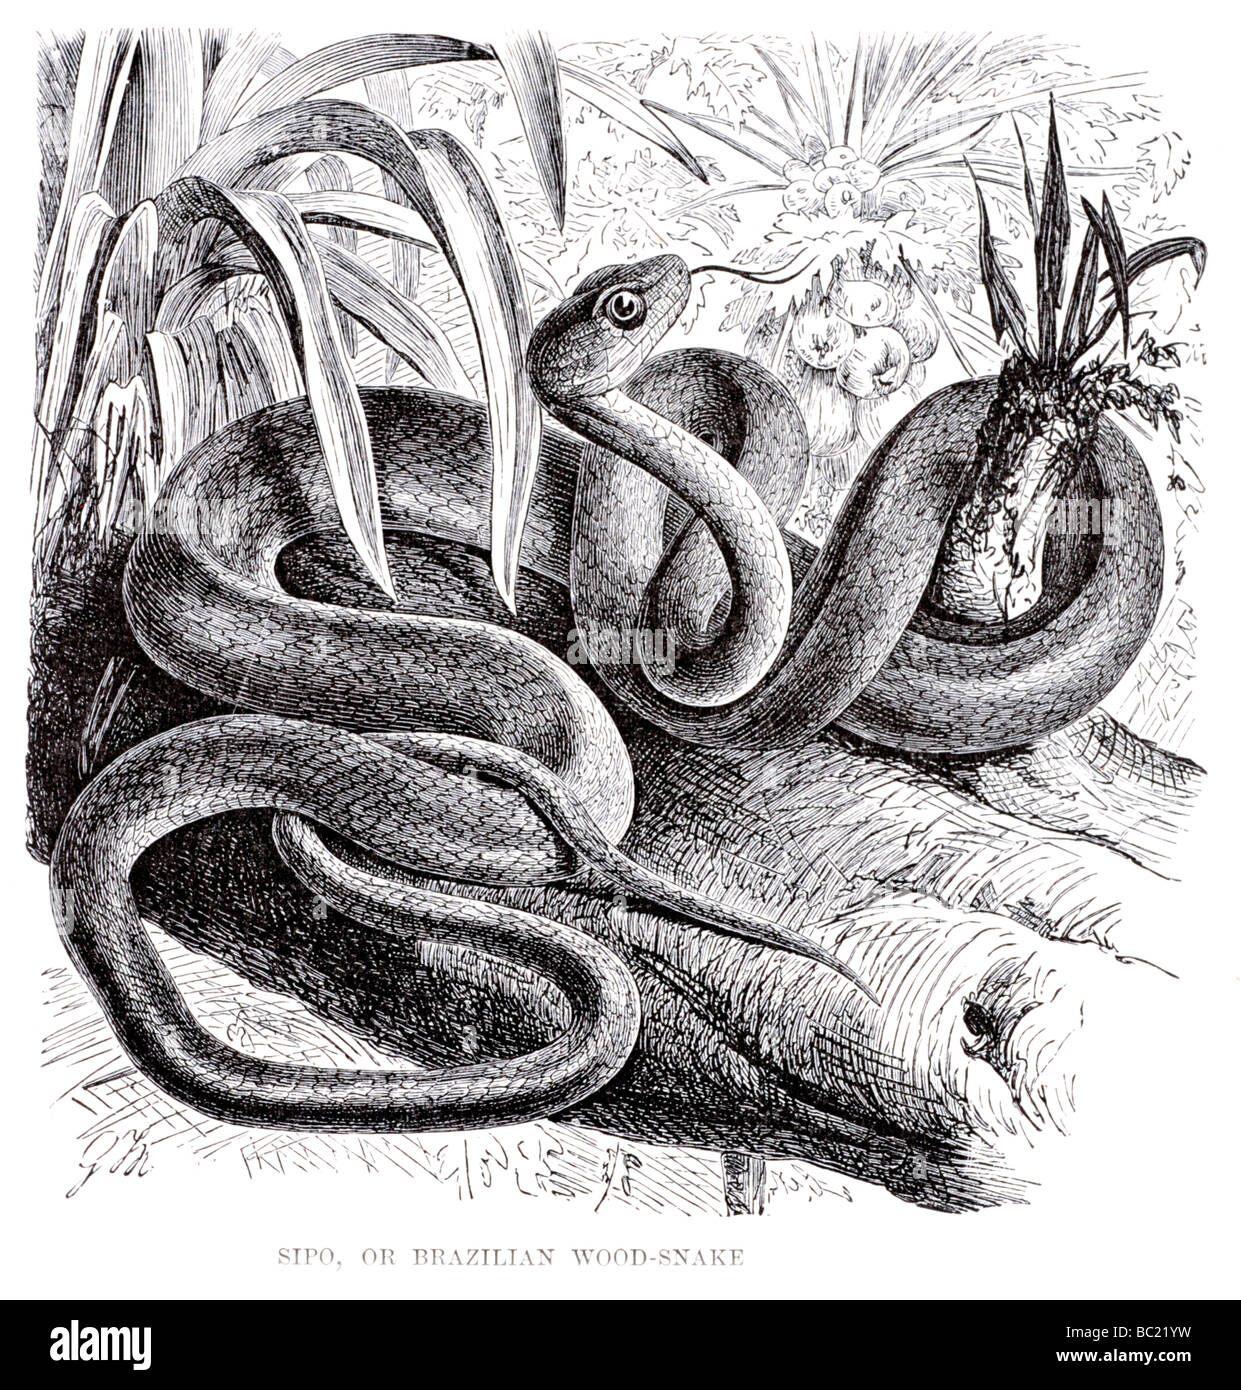 sipo or brazilian wood snake Stock Photo - Alamy